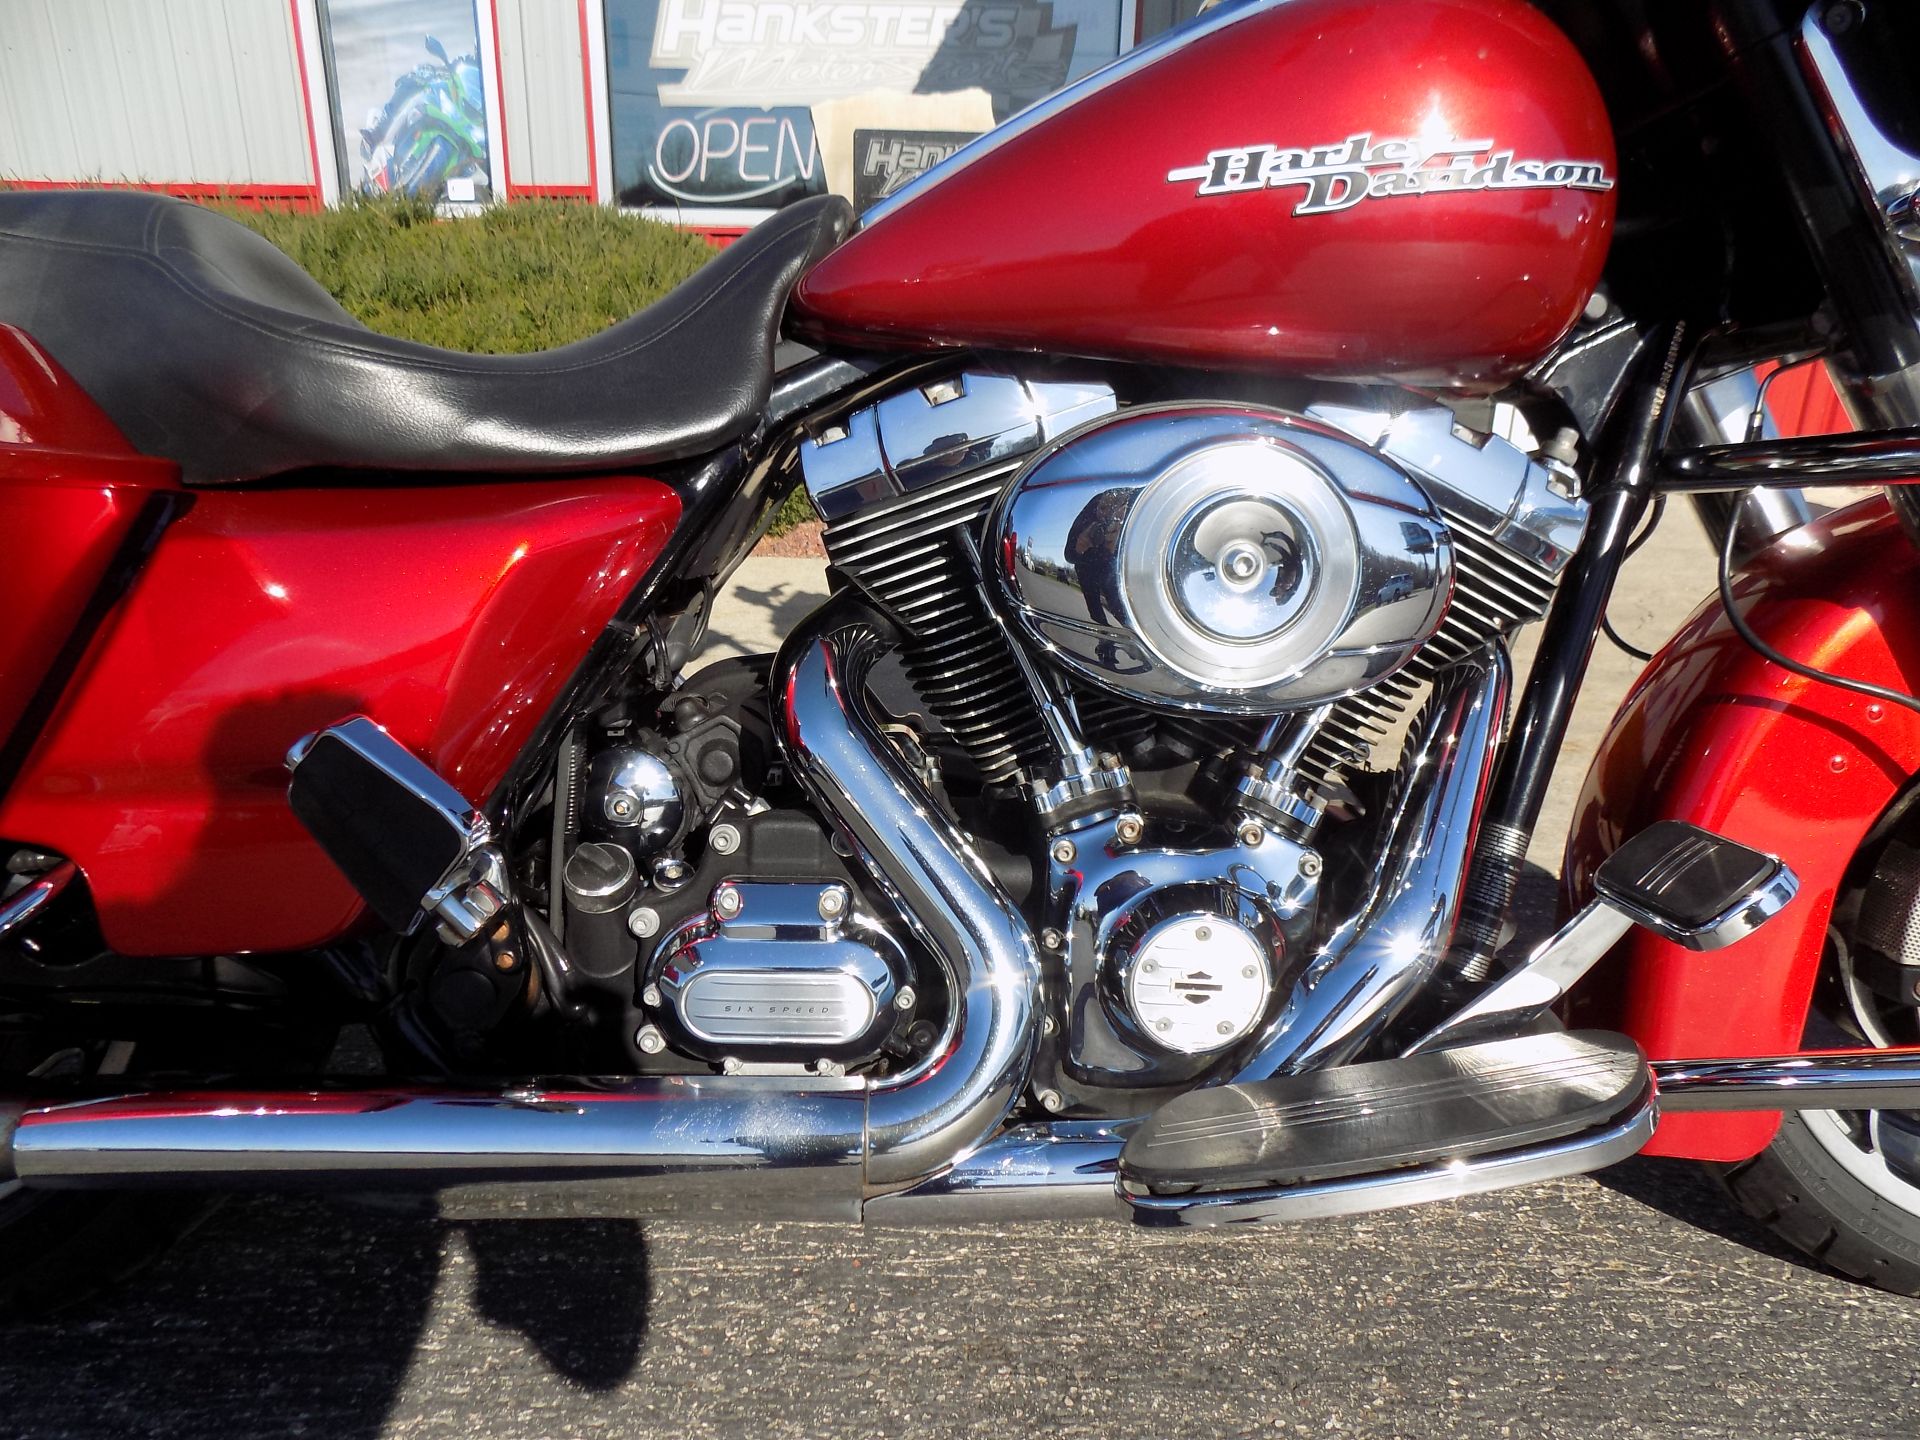 2013 Harley-Davidson Street Glide® in Janesville, Wisconsin - Photo 18